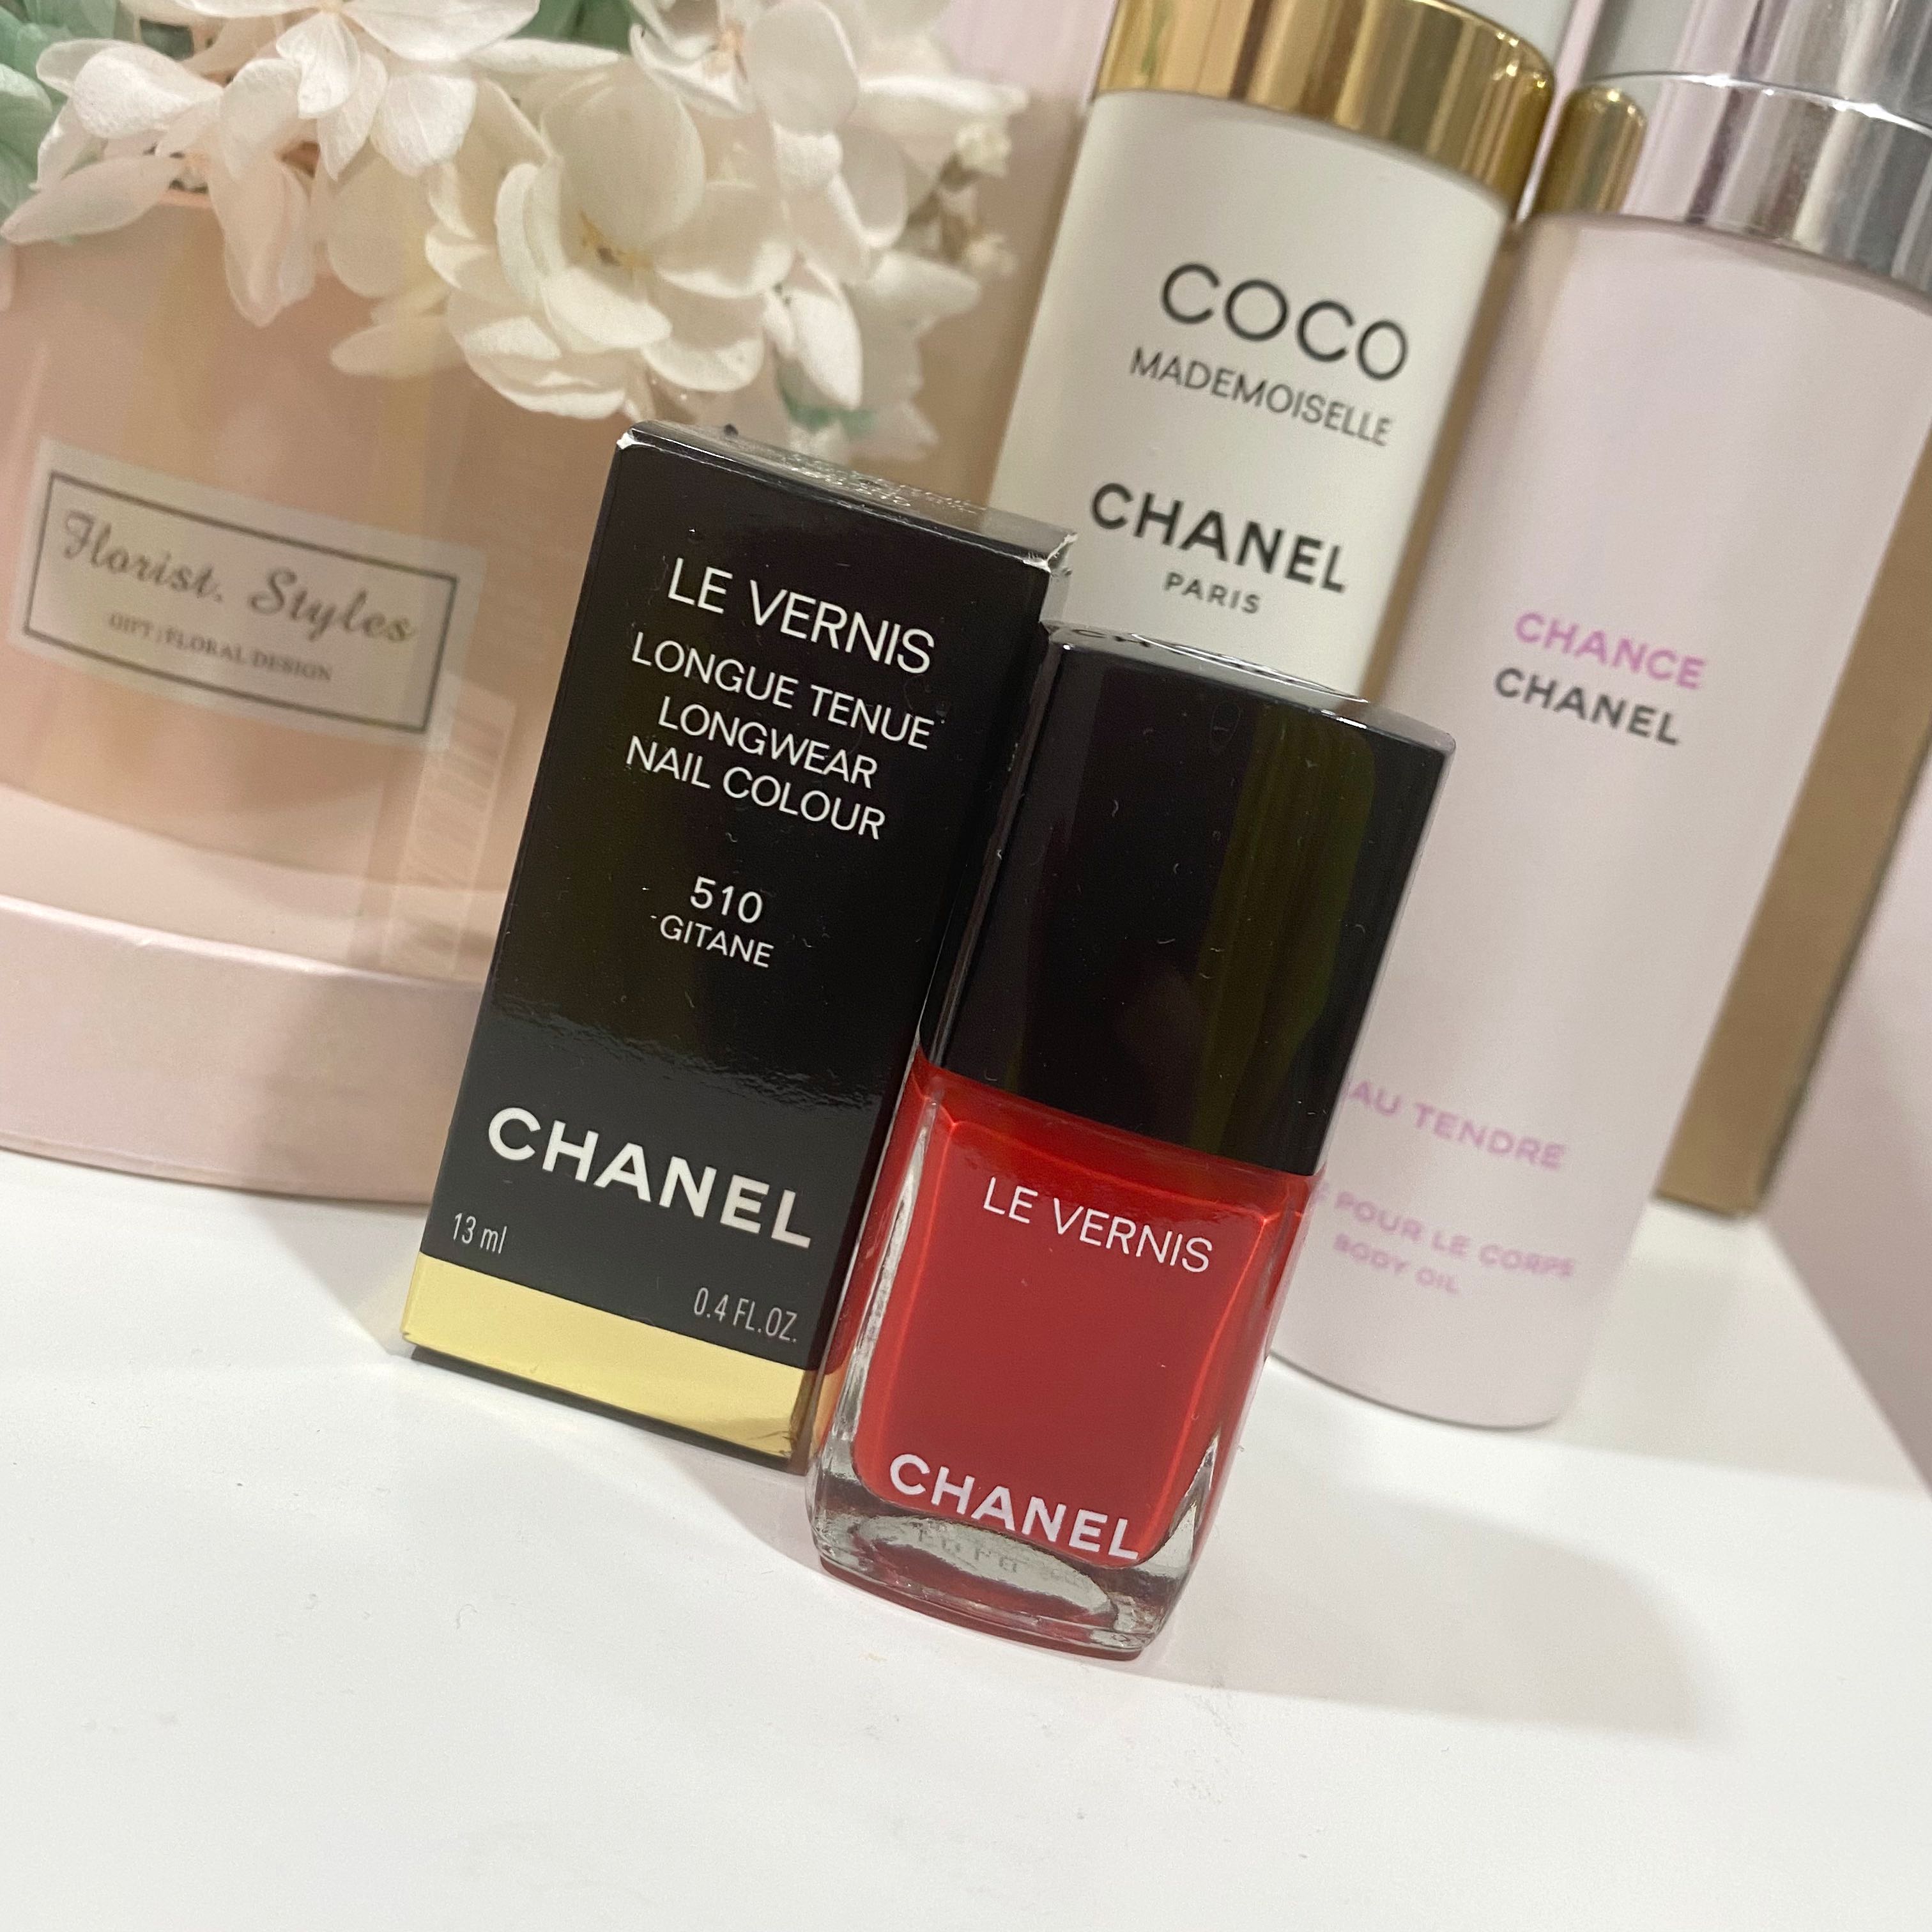 Chanel in #510 Gitane + Comparisons